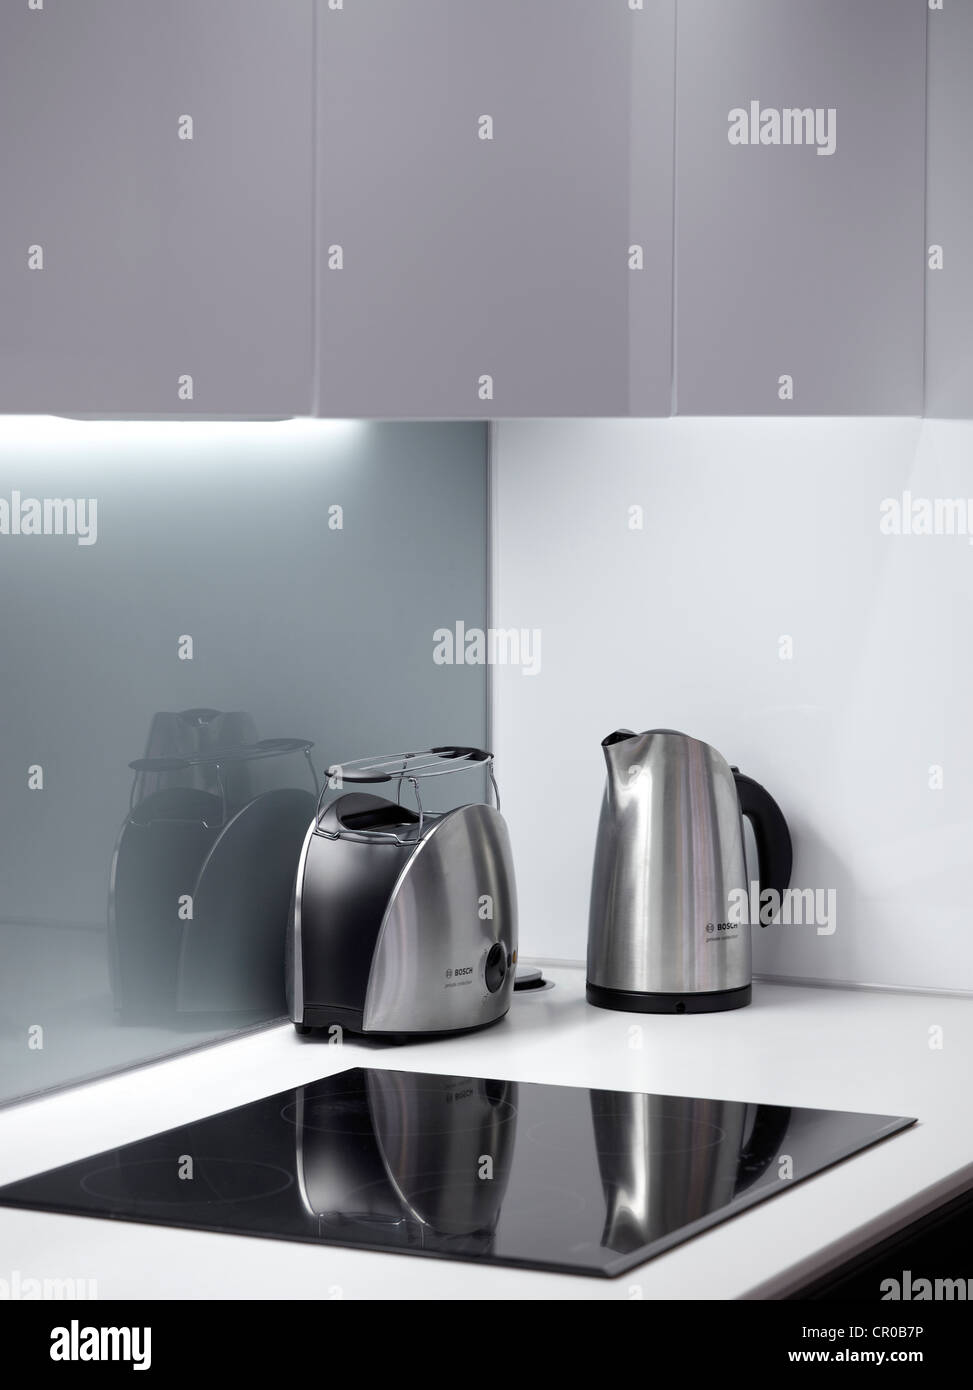 Ecke des modernen Designer-Küche mit Herd, Wasserkocher und Toaster, alles  grau und Silber Stockfotografie - Alamy